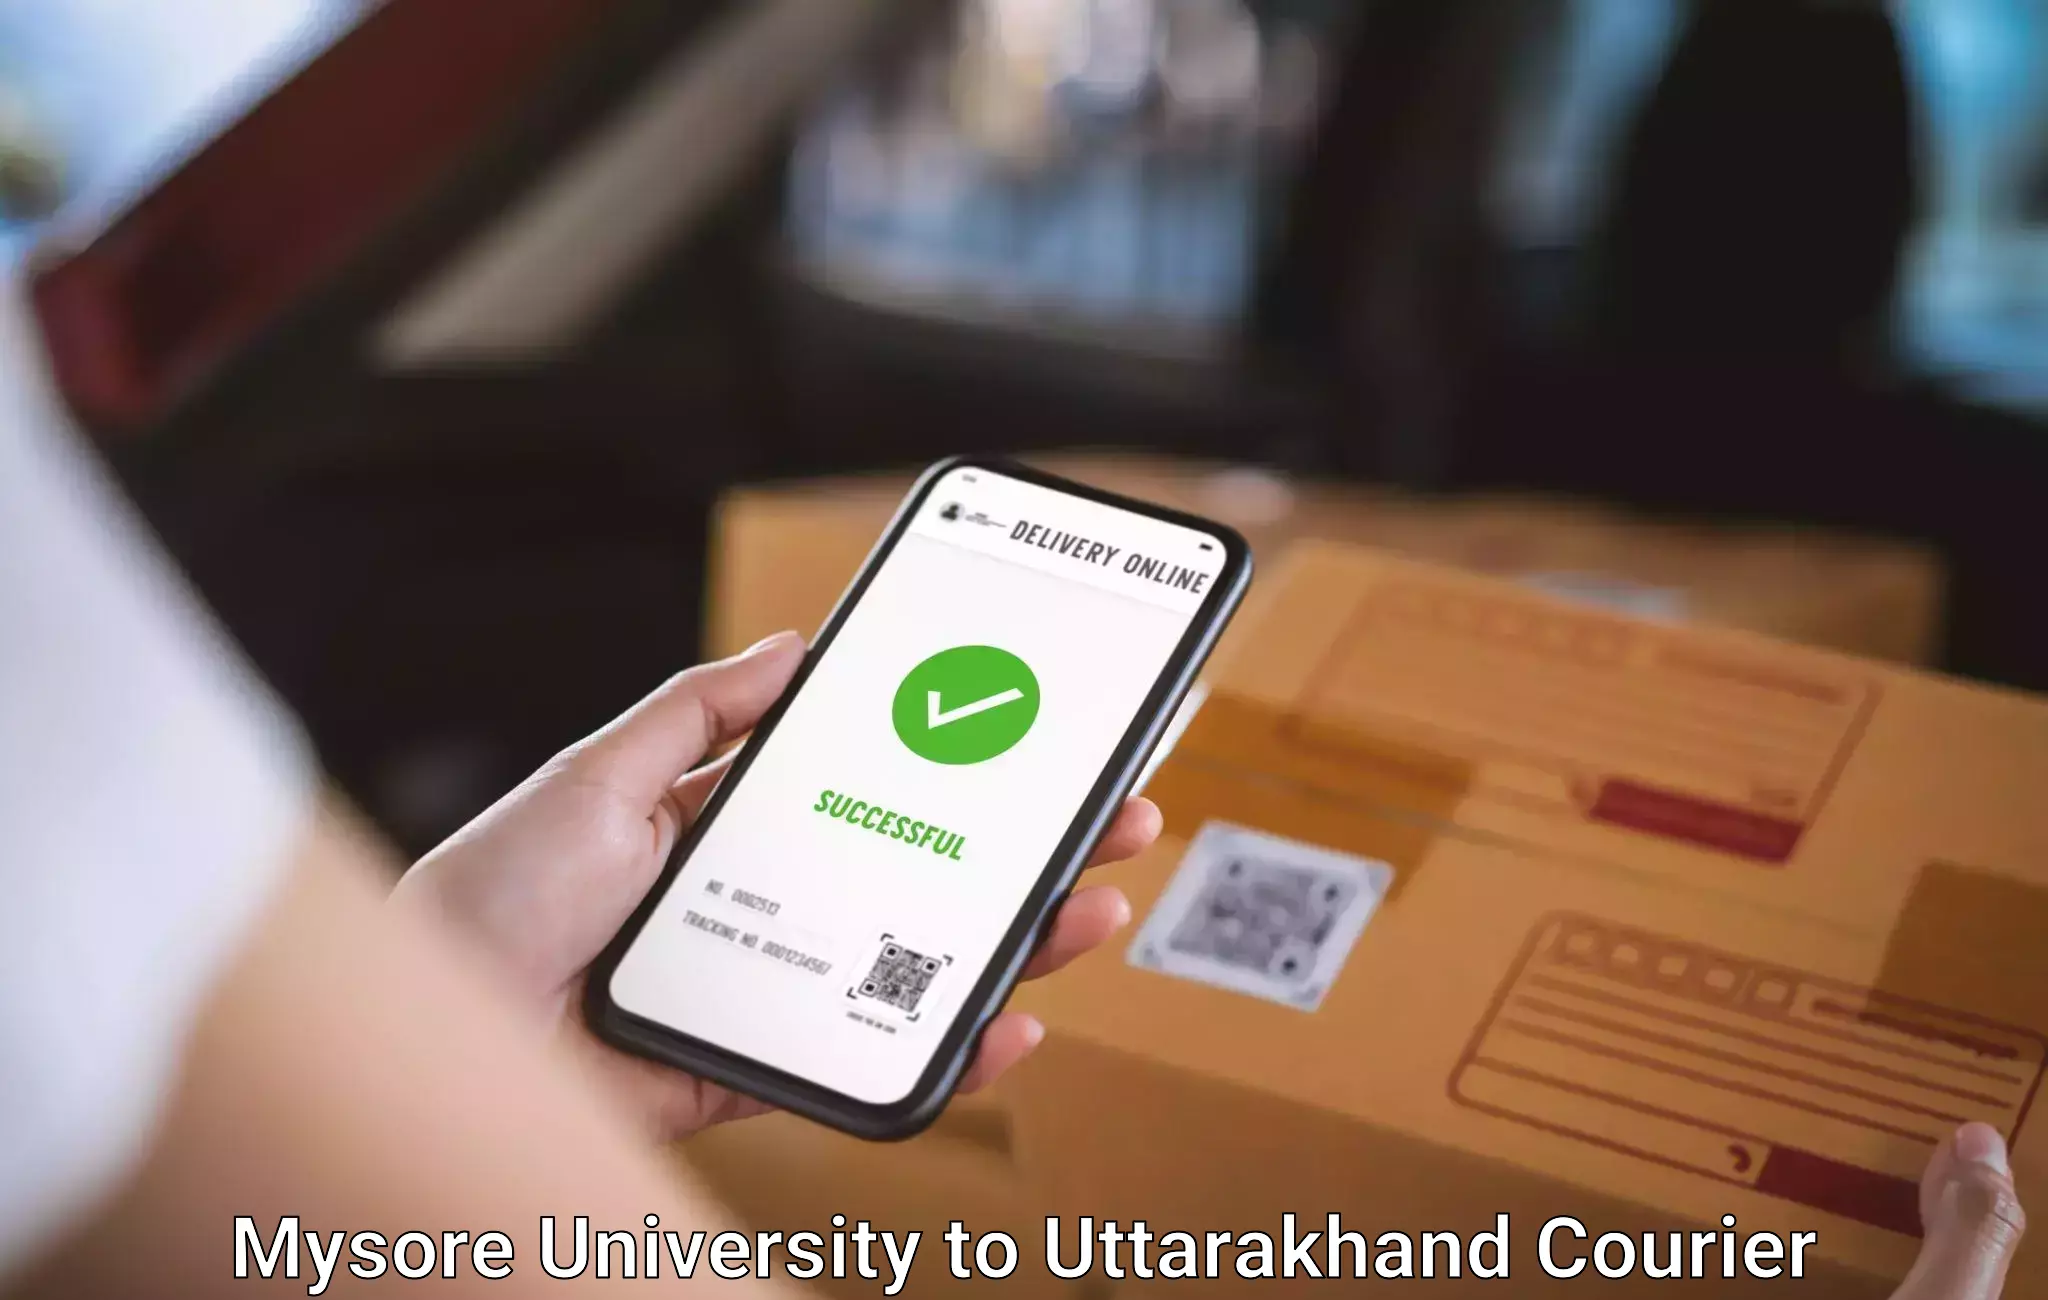 Baggage courier optimization Mysore University to Uttarakhand